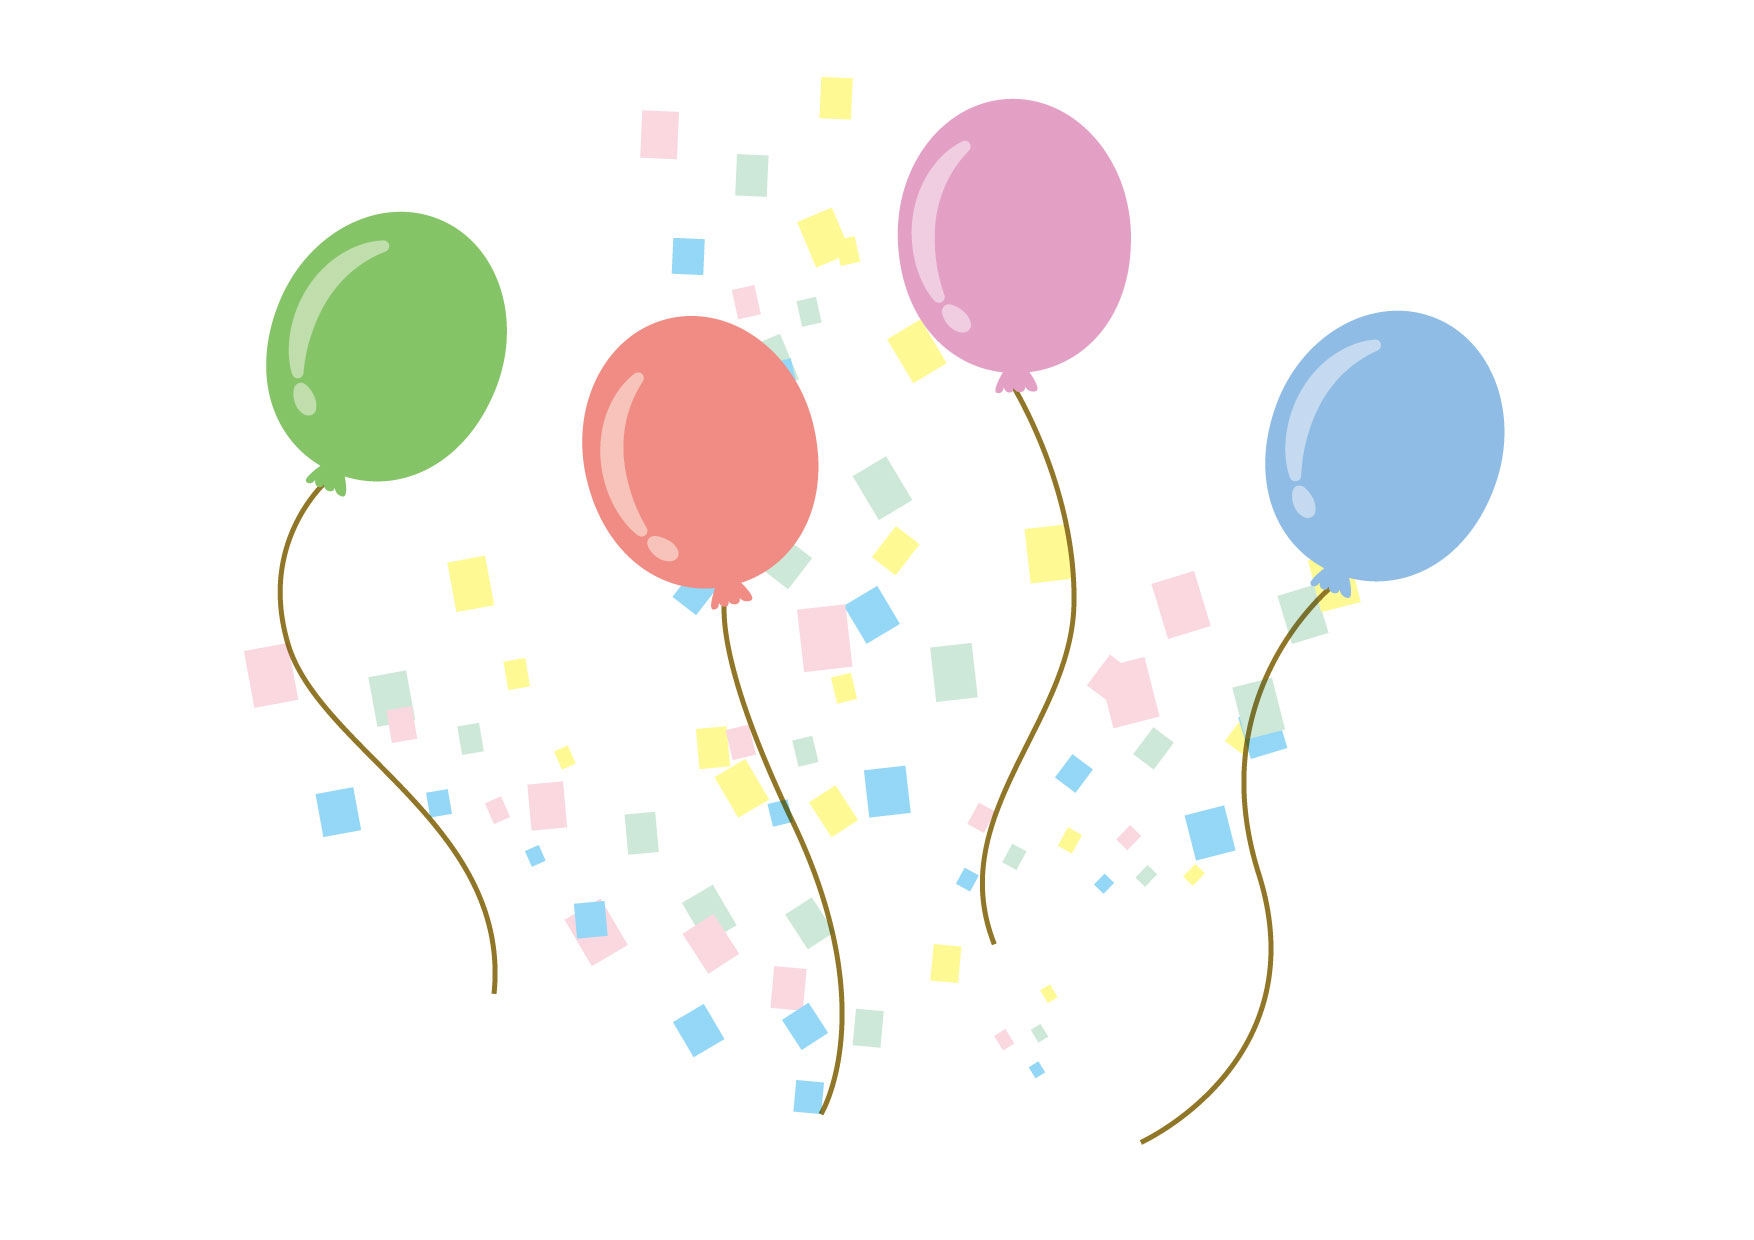 可愛いイラスト無料 風船 紙吹雪 Free Illustration Balloons Confetti 公式 イラスト素材サイト イラストダウンロード